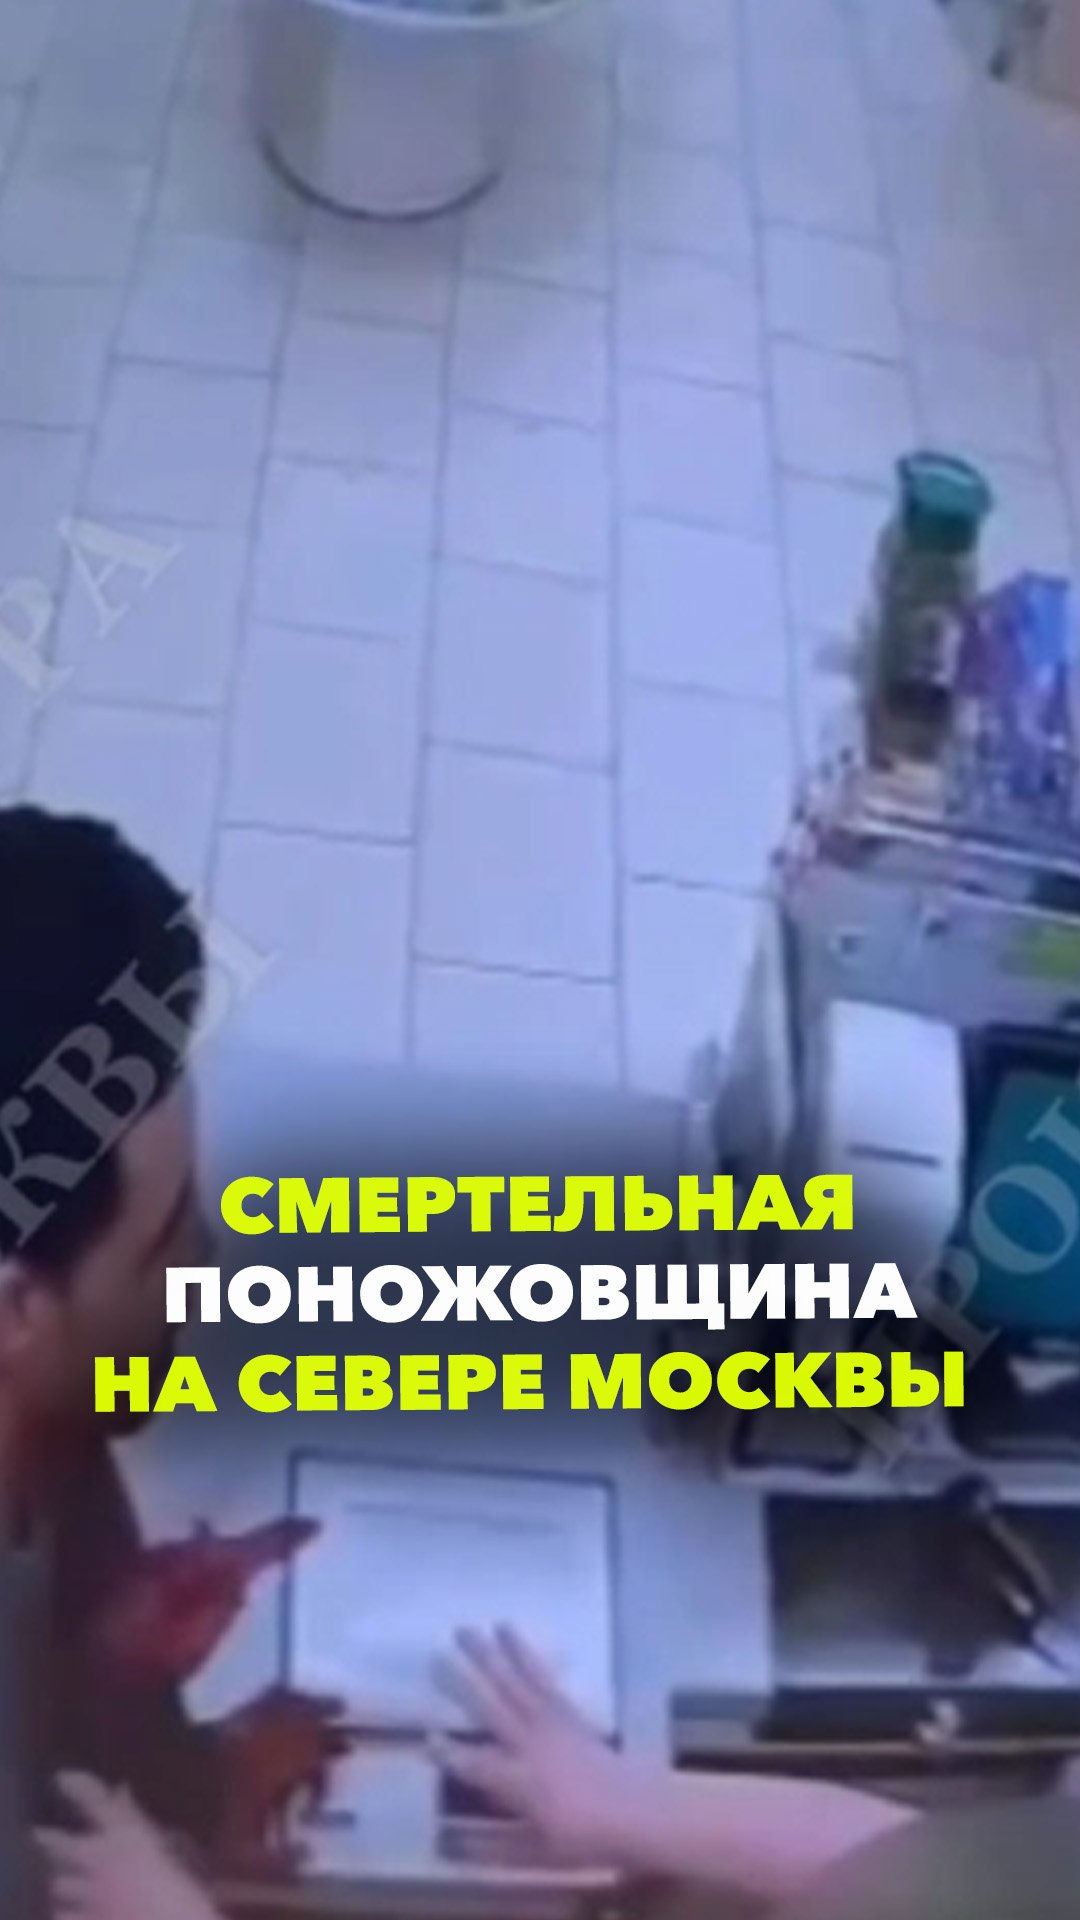 Убил человека, пырнул ножом девушку, кассира магазина и полицейского – резня на севере Москвы